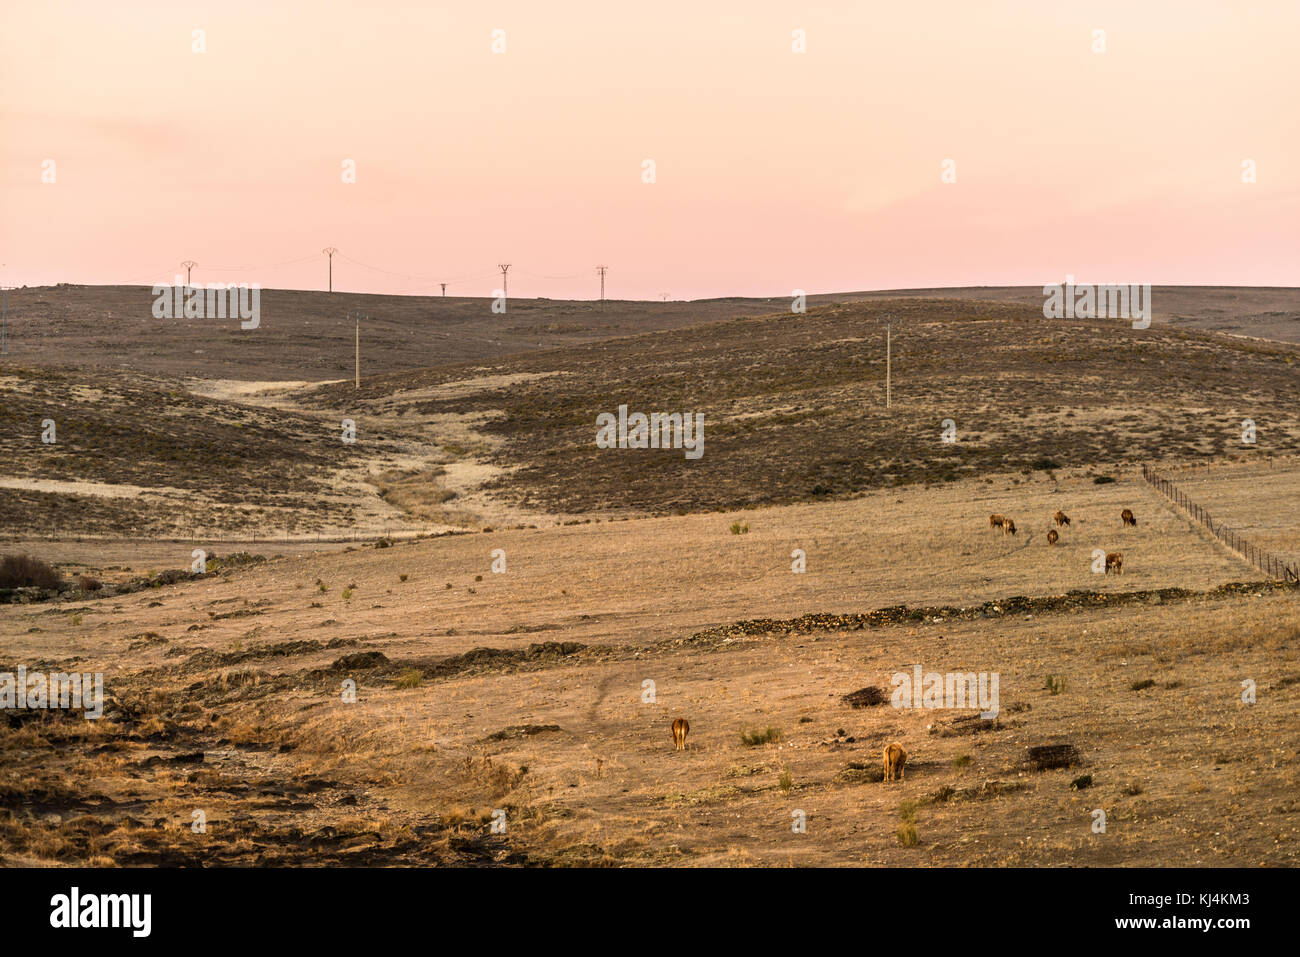 Crépuscule dans un paysage désertique de la steppe pendant une longue période de sécheresse. Les vaches sur l'arrière-plan. Cáceres, Extremadura, Espagne. Banque D'Images